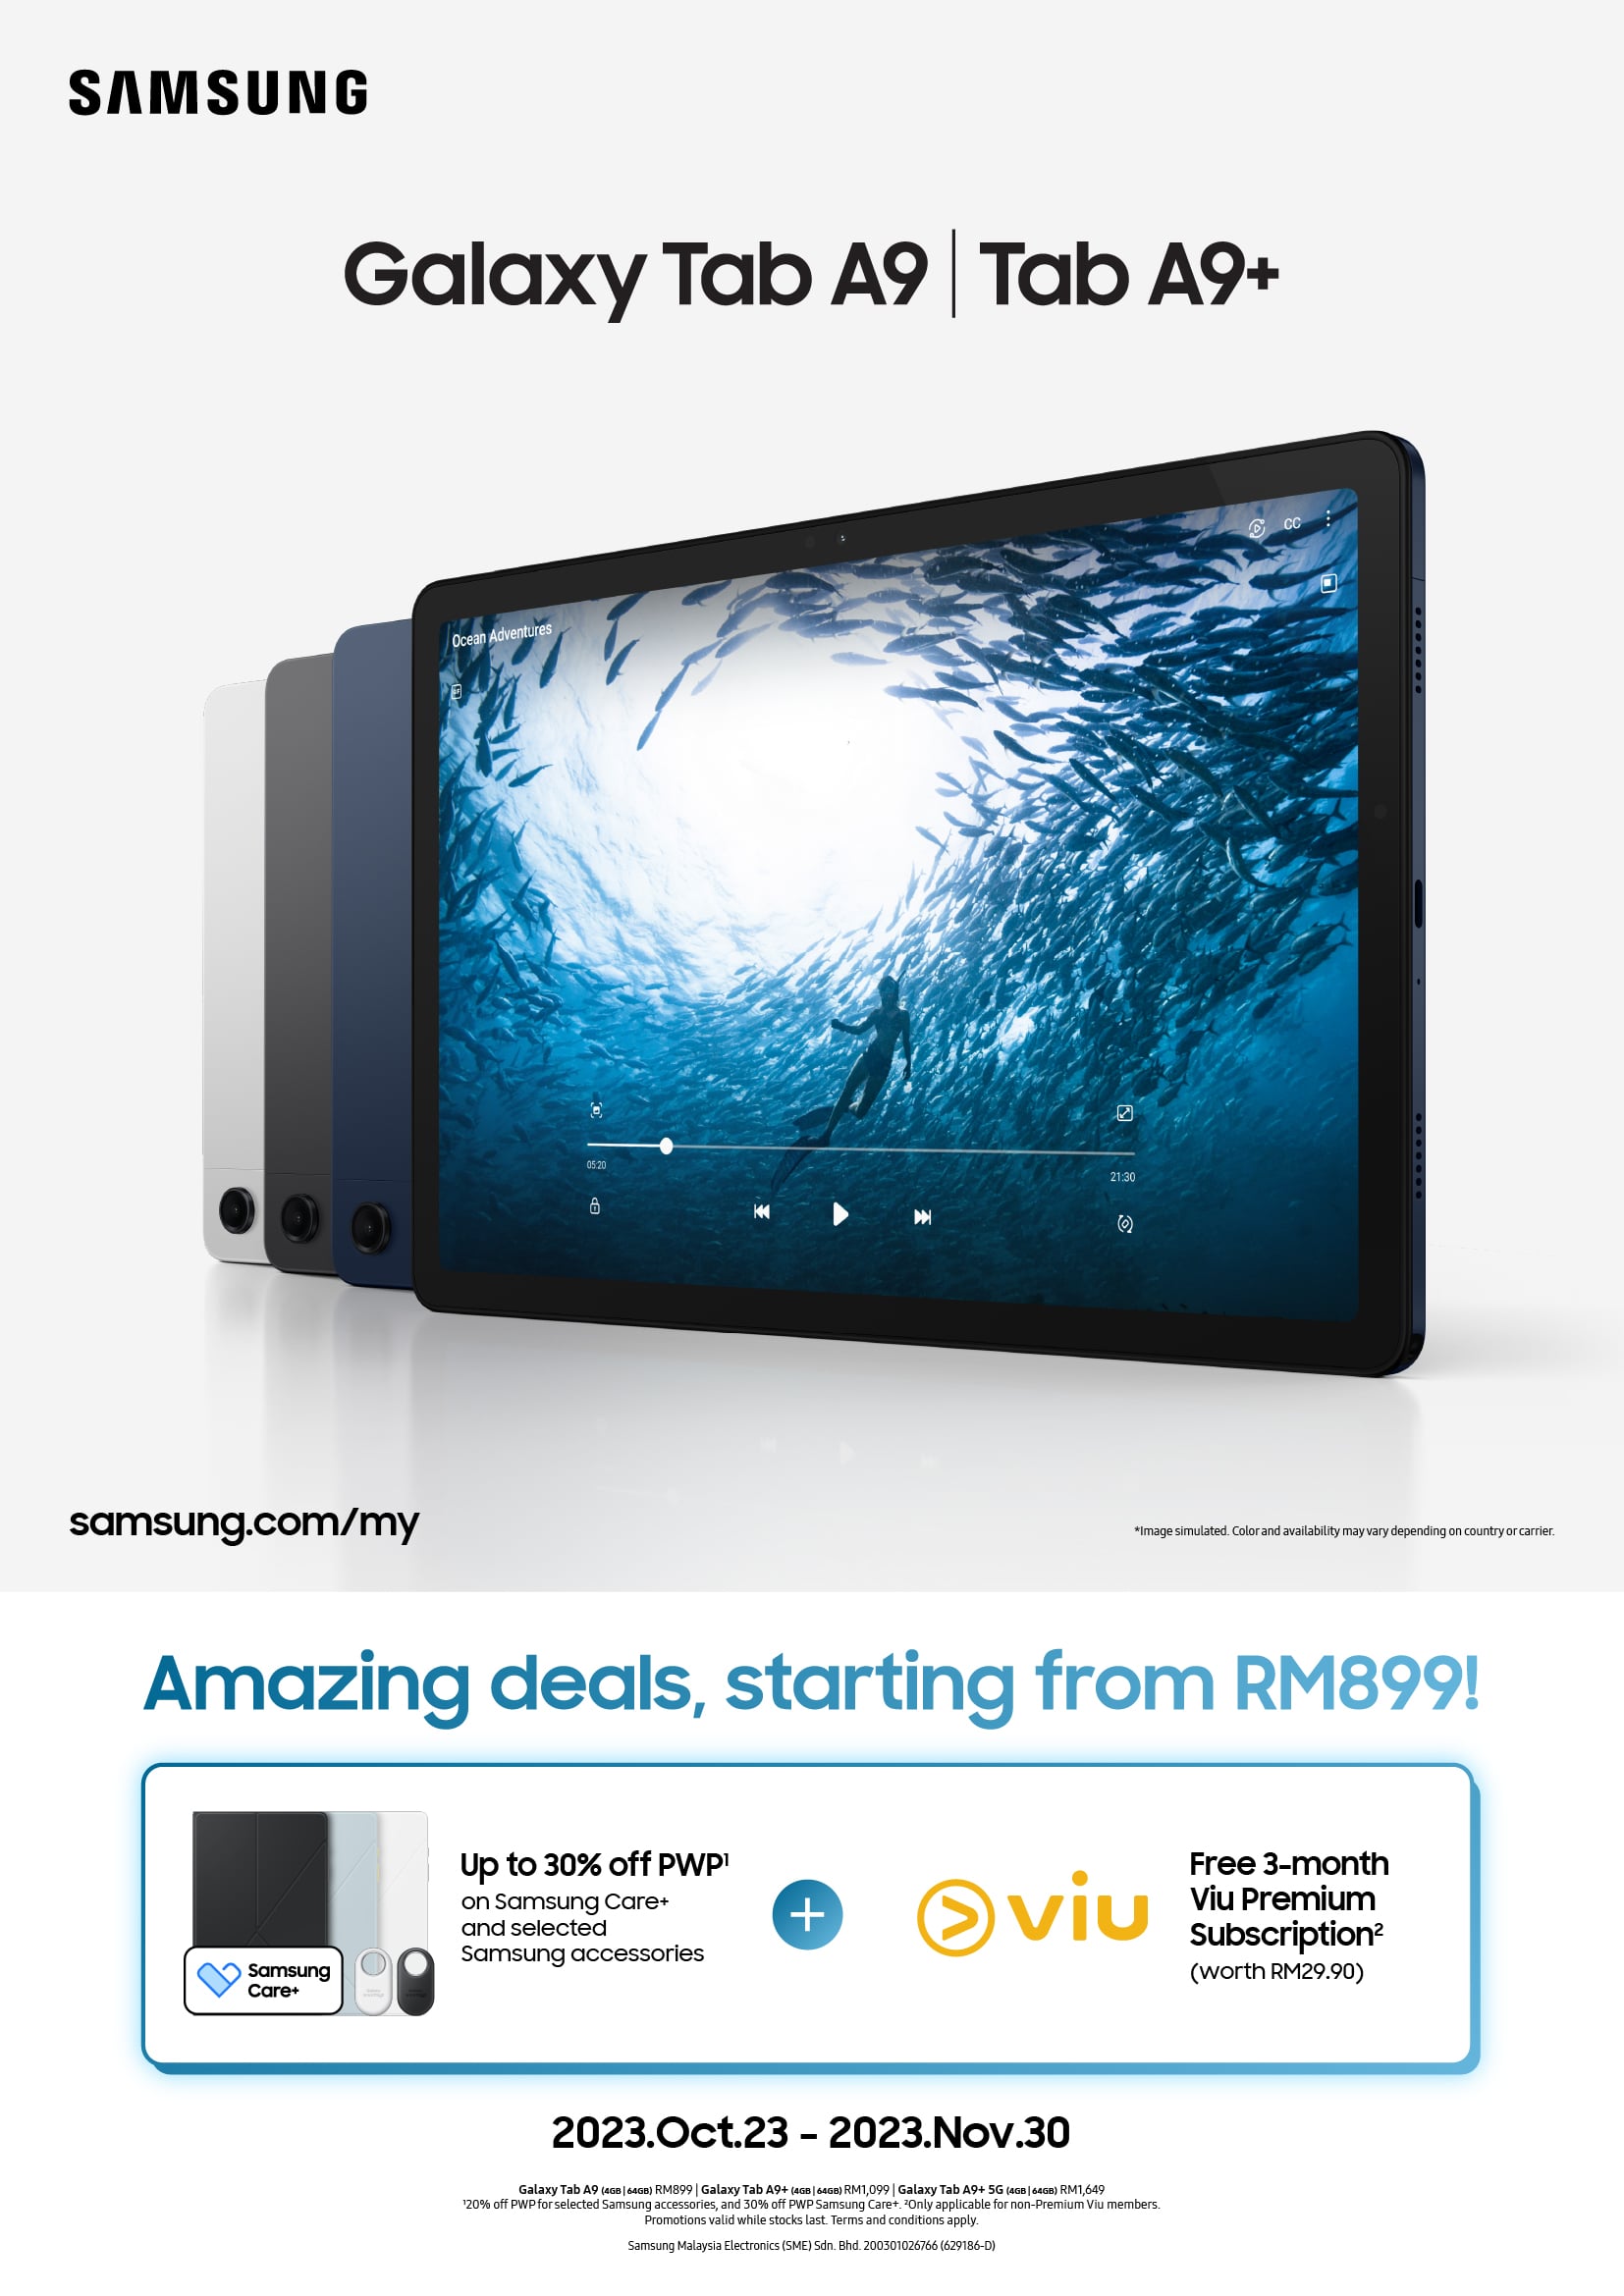 三星Galaxy Tab A9 | A9+ 发布，售价RM899起 8